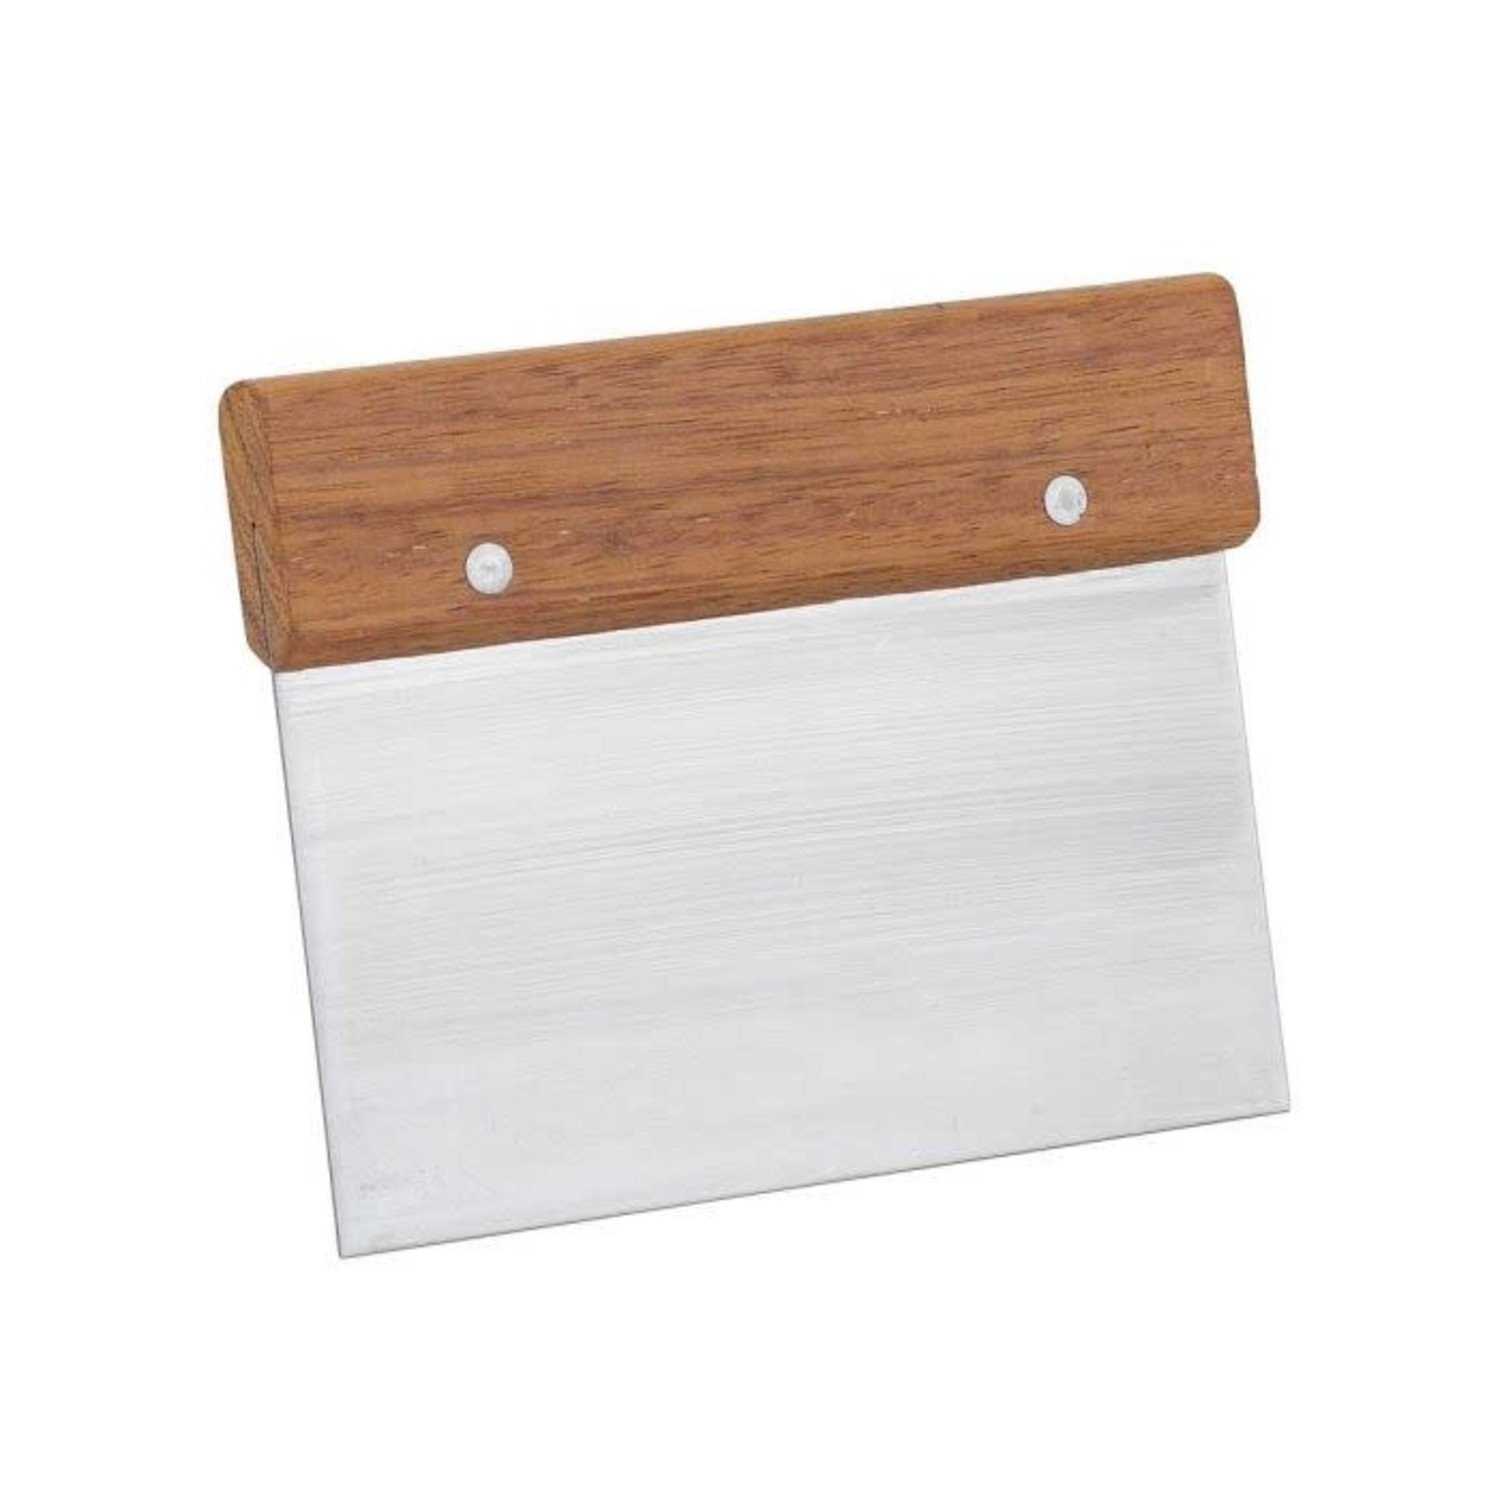 bench scraper, wood handle - Whisk